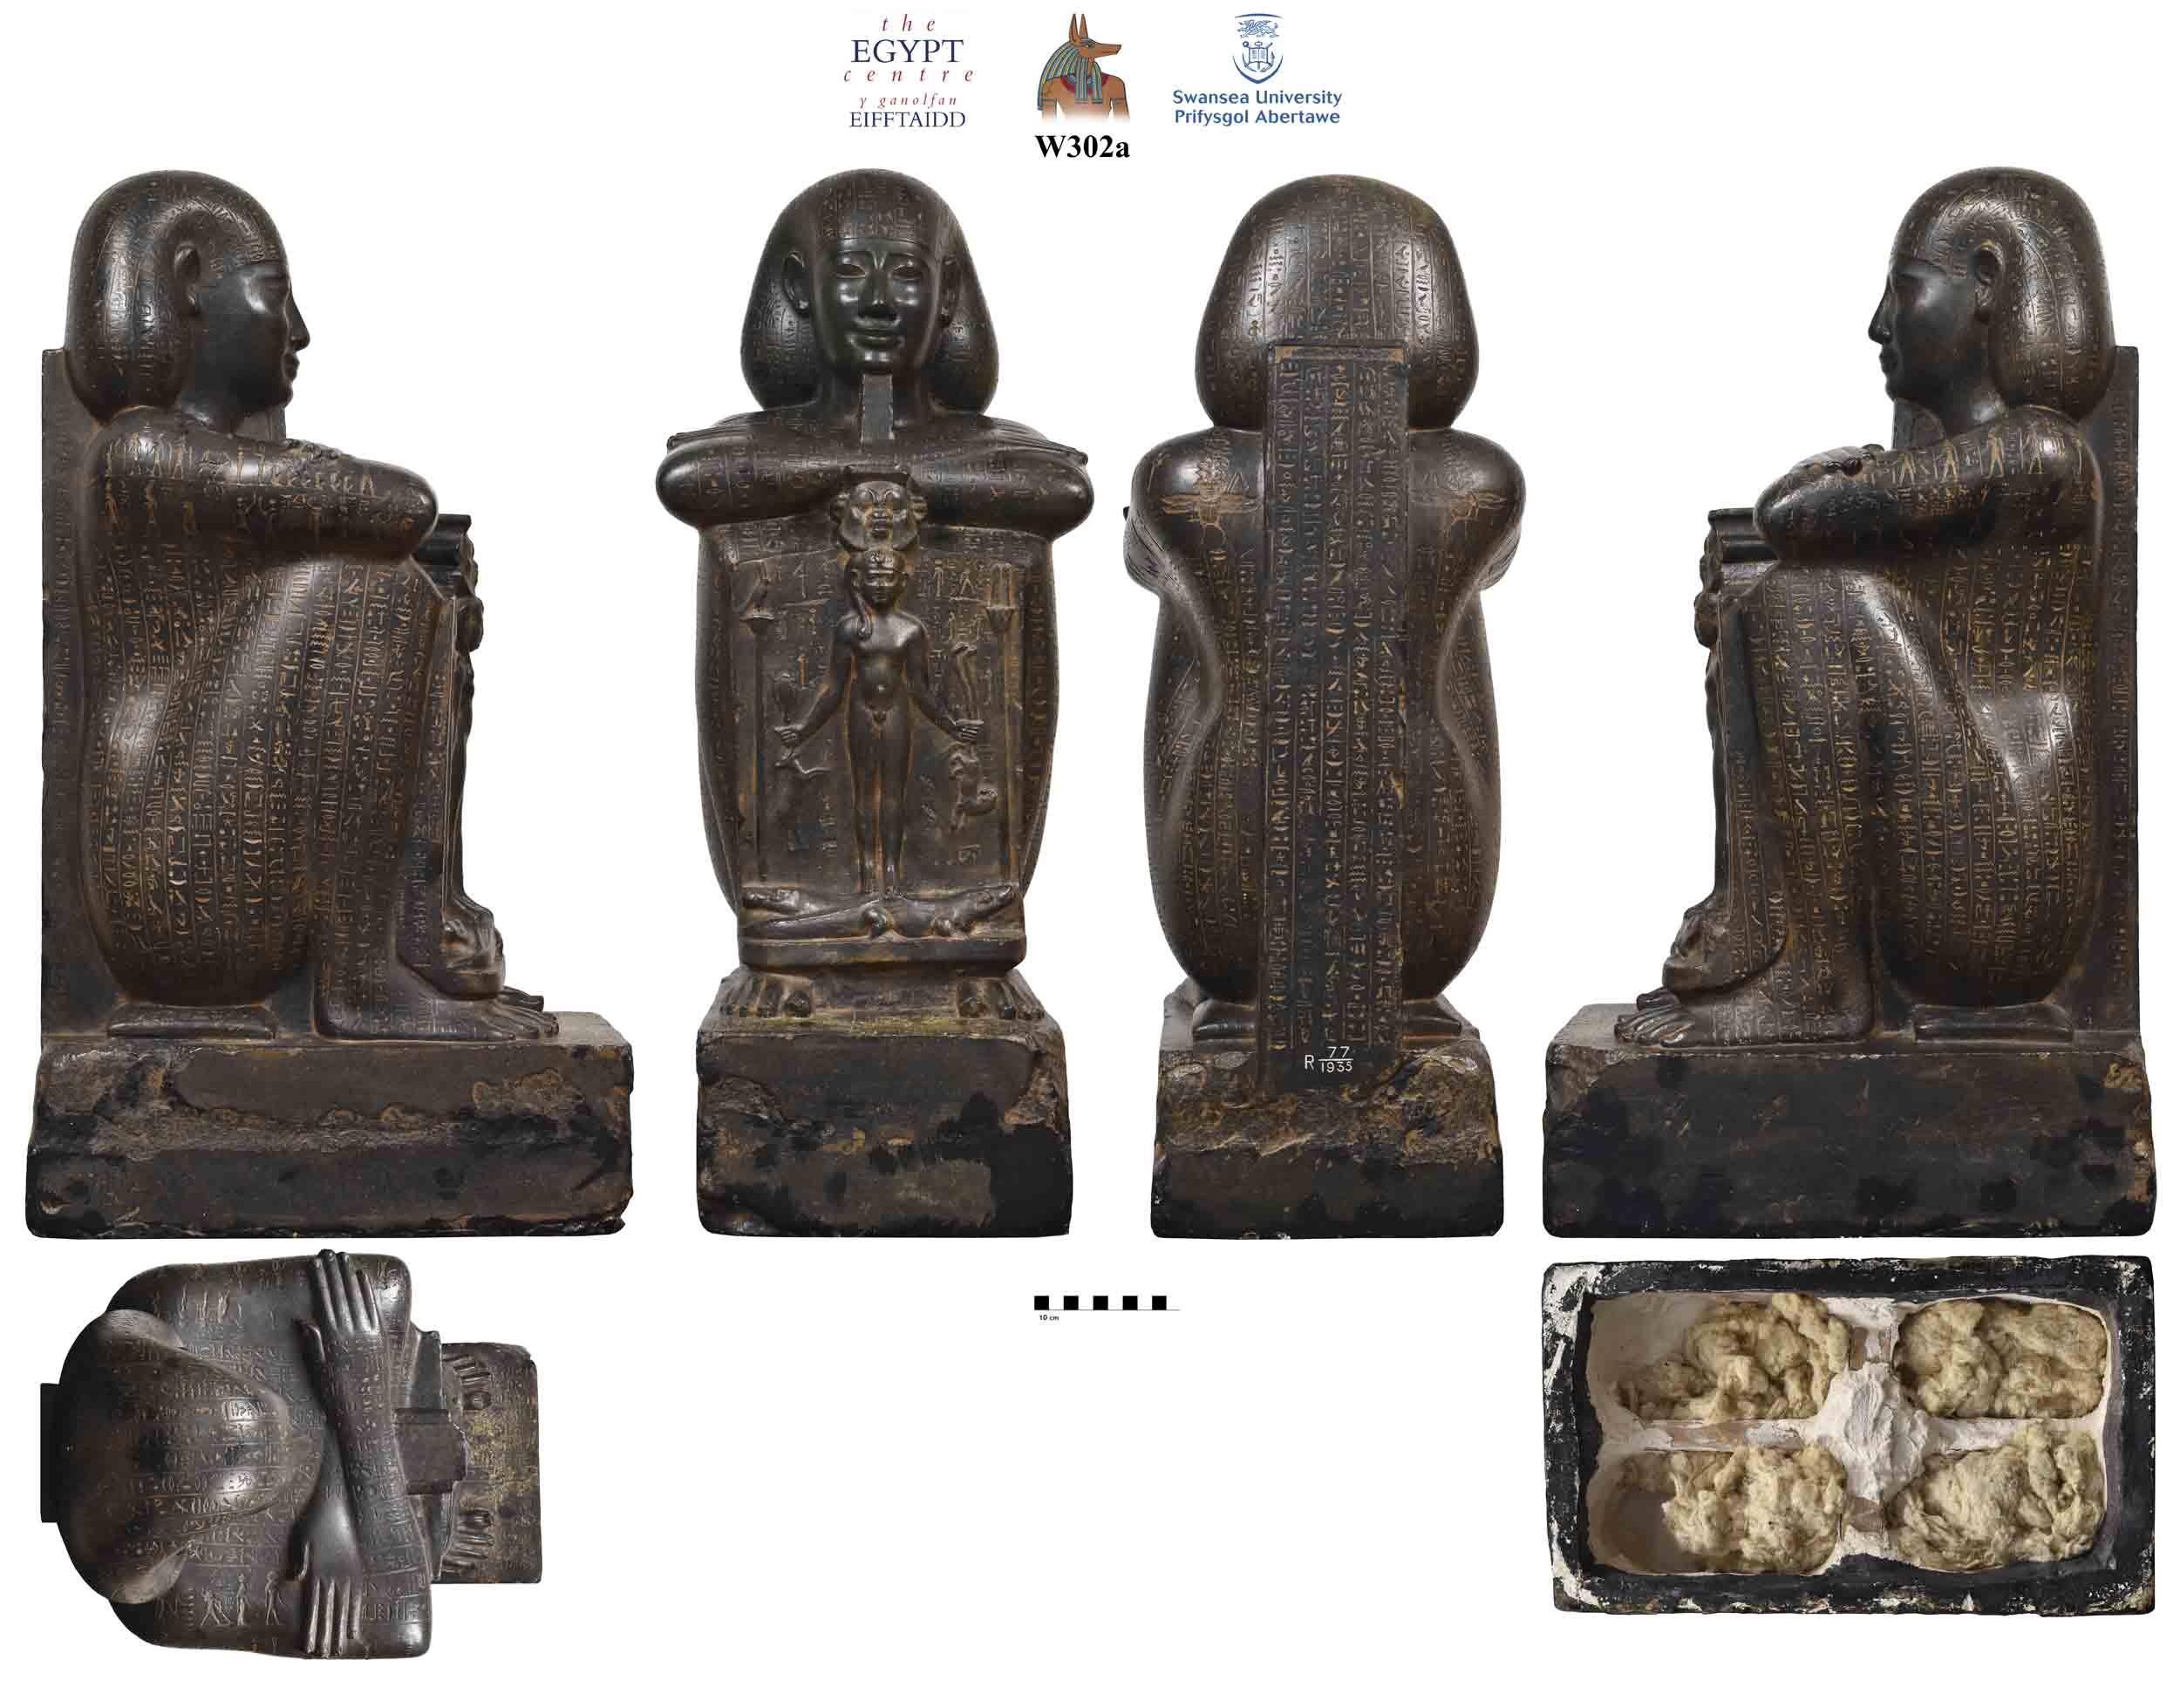 Image for: Plaster cast of Djedhor statue base